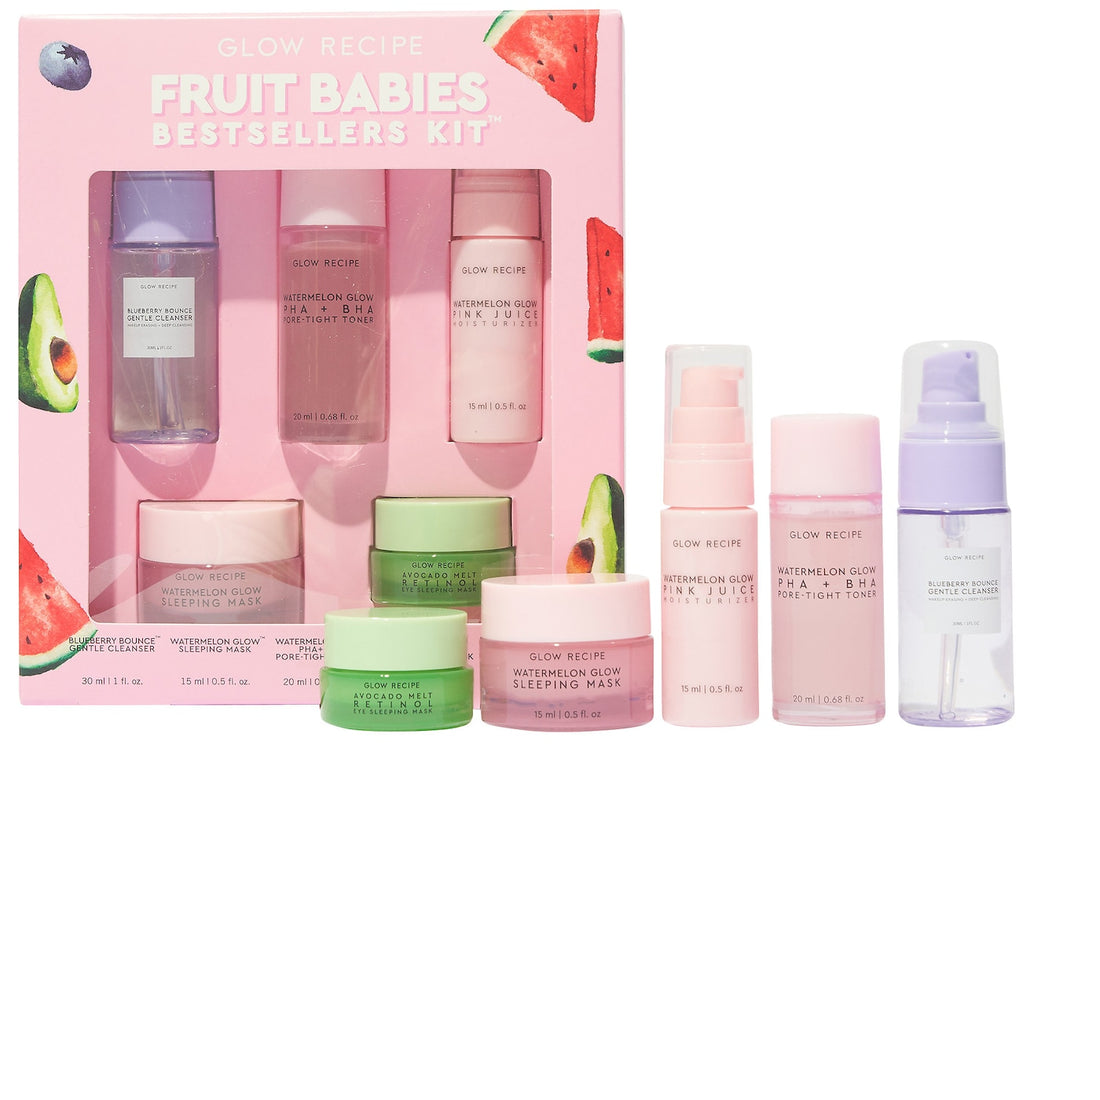 Fruit Babies Bestsellers Kit - Glow Recipe.